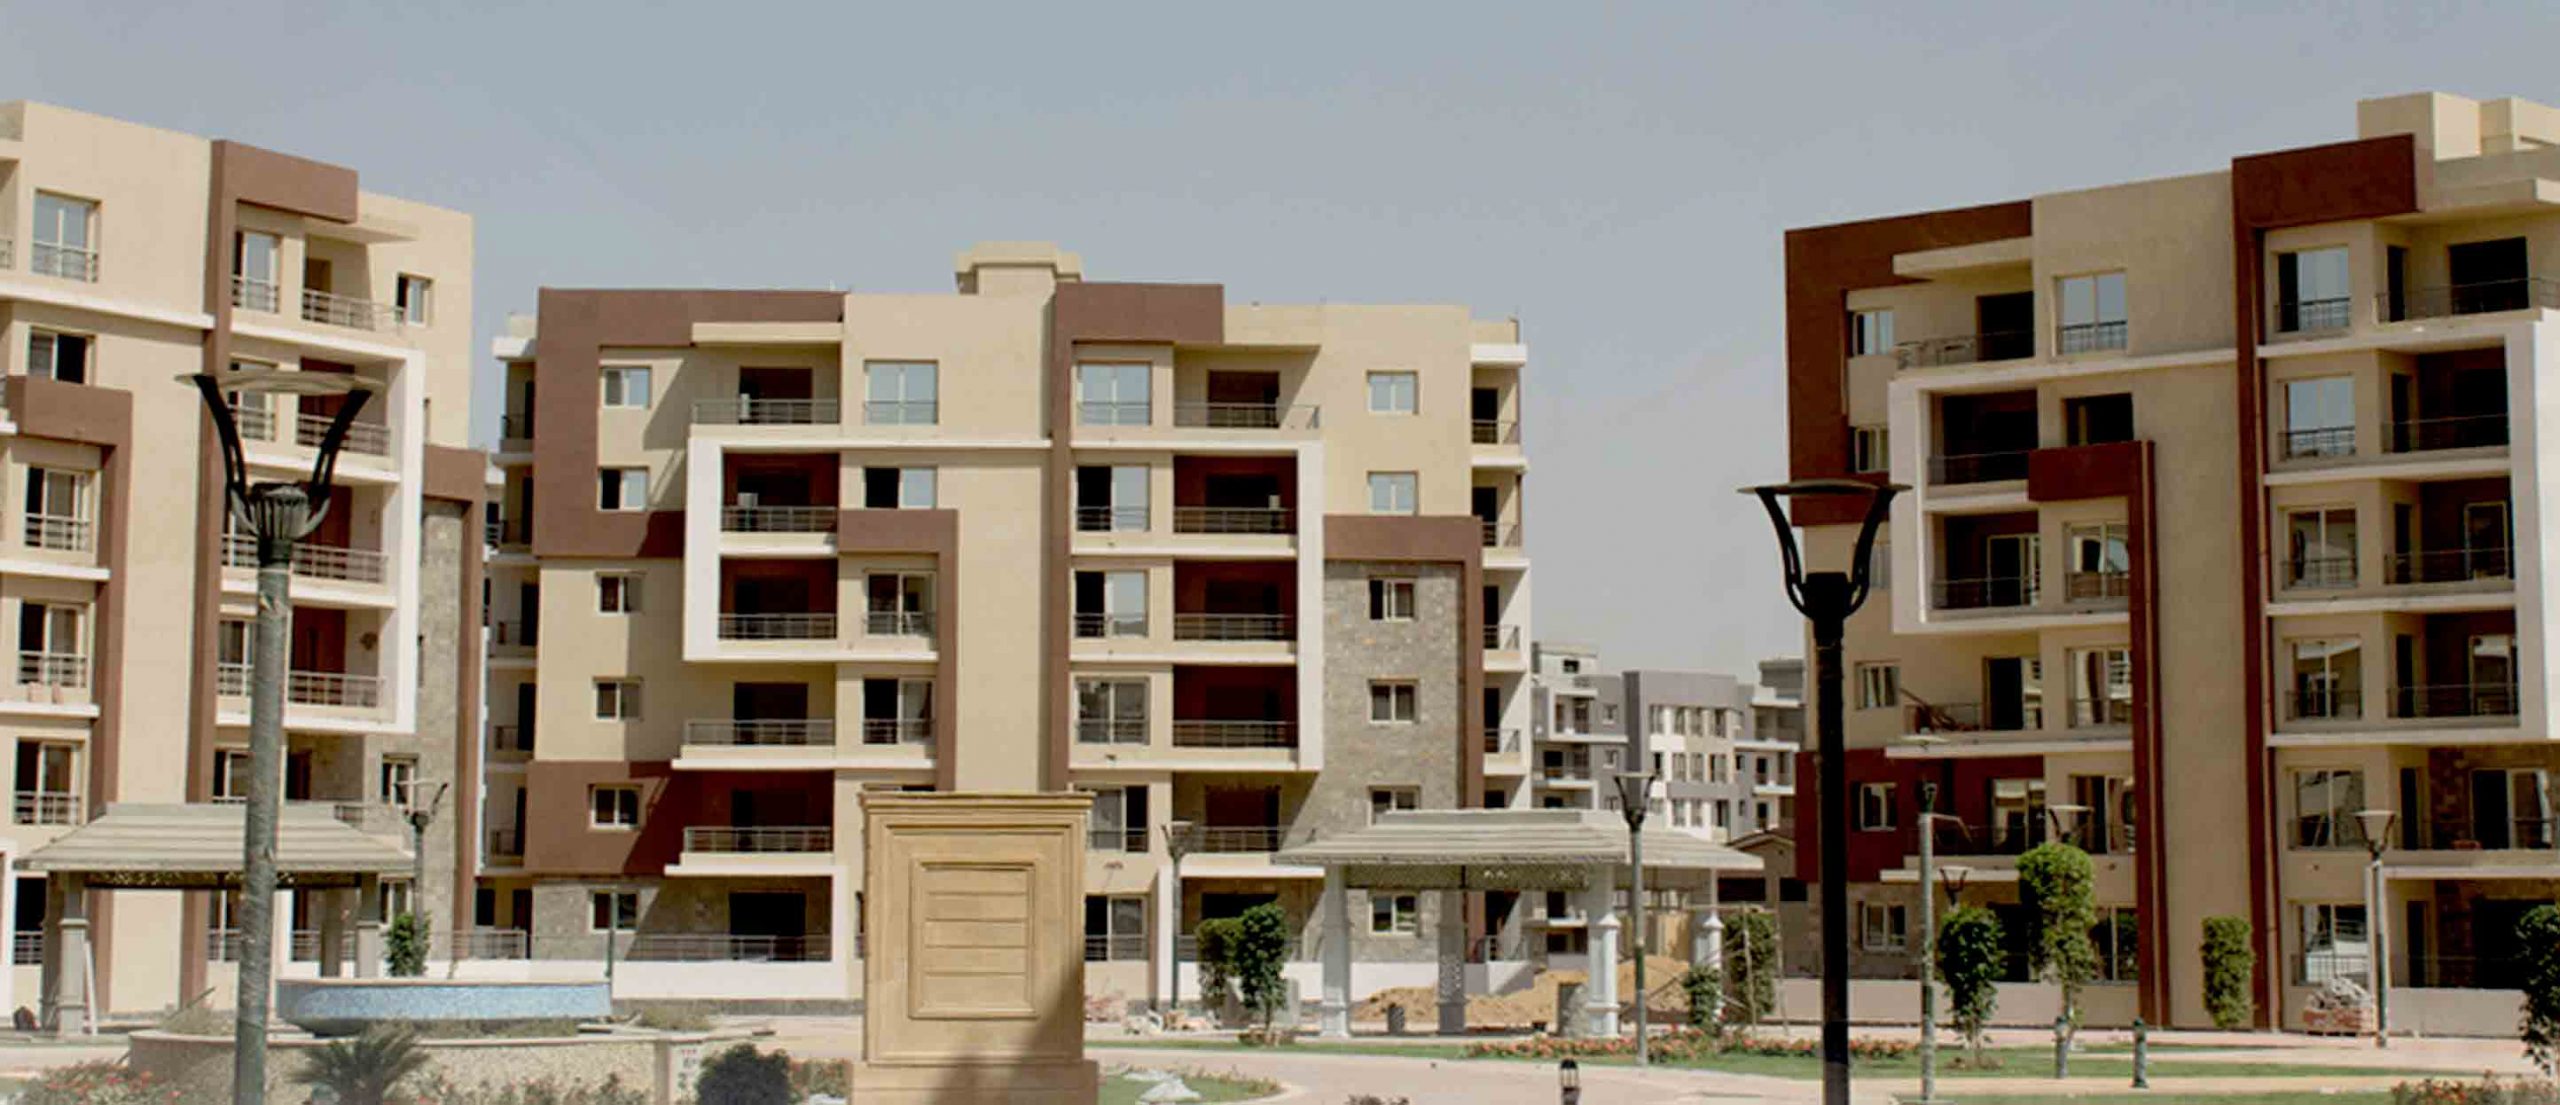 الأوقاف تطرح شقق سكنية بـ دار مصر وجنة وسكن مصر في 7 محافظات بالتقسيط وبدون فوائد